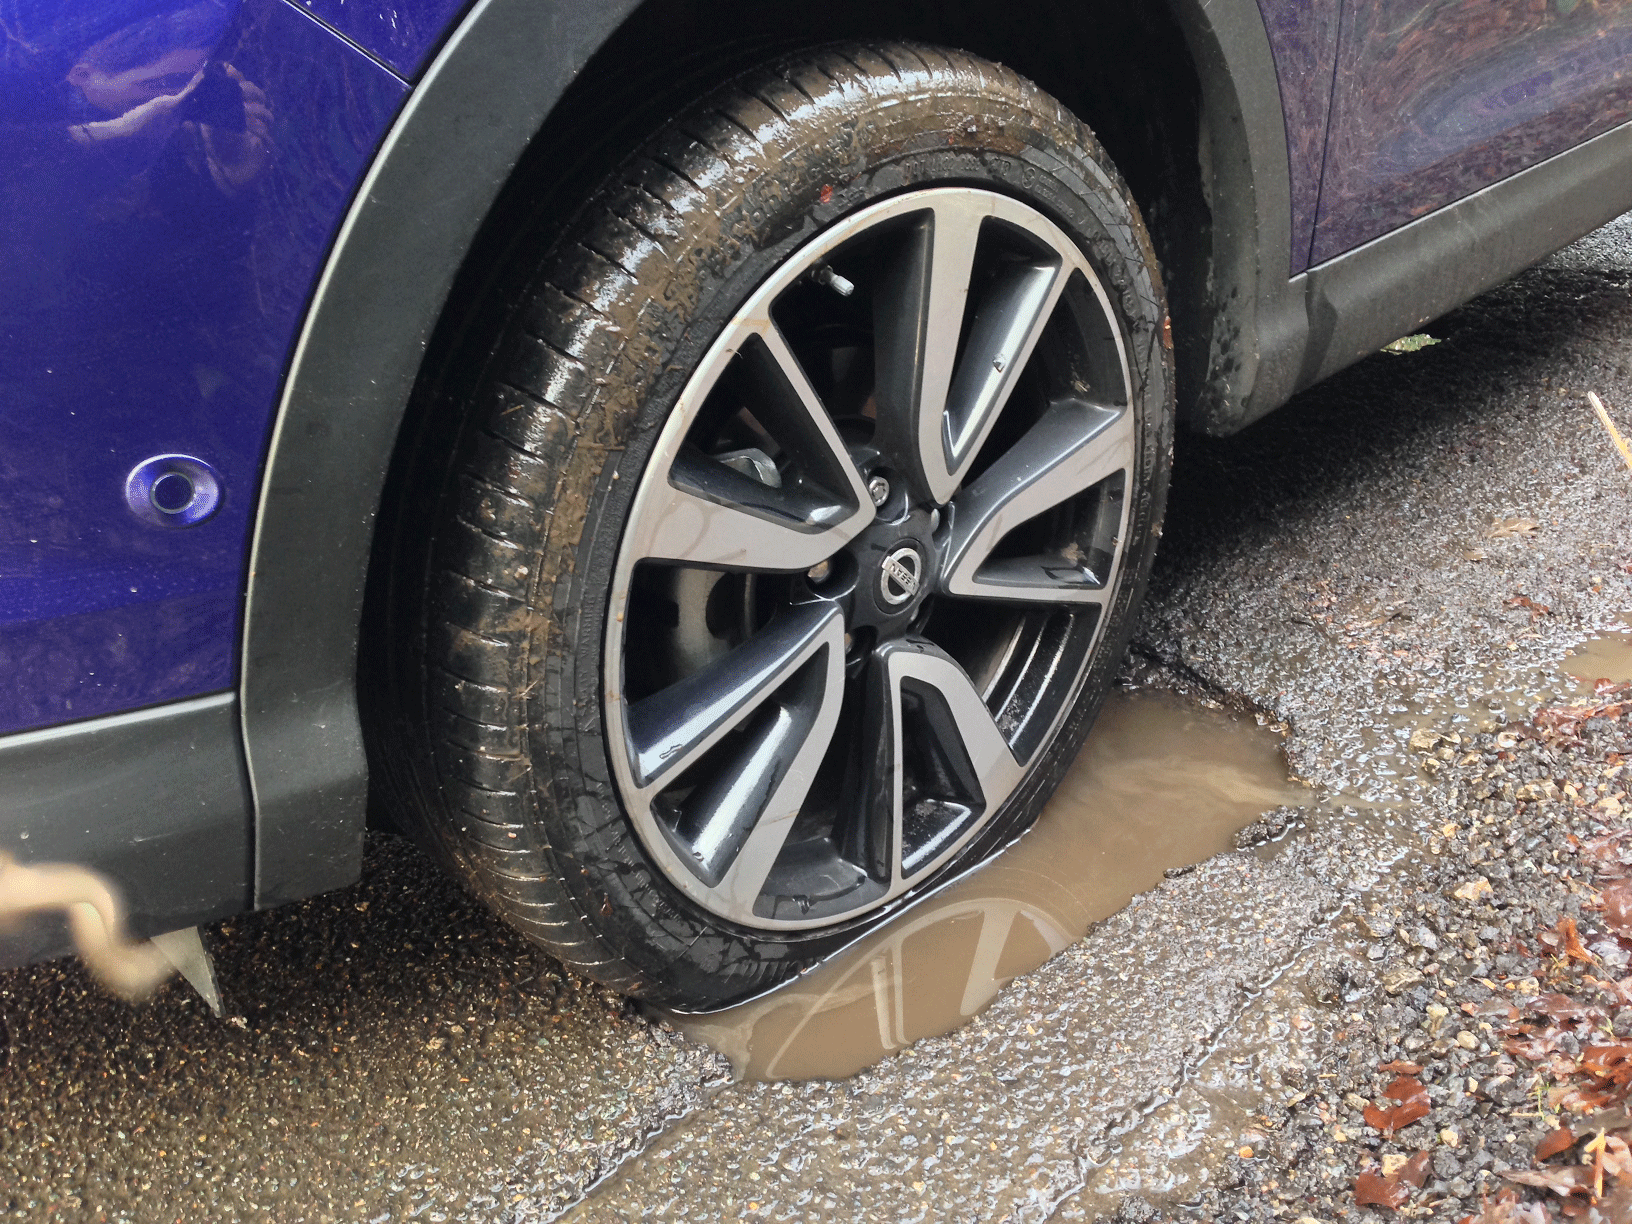 Nissan wheel in pothole